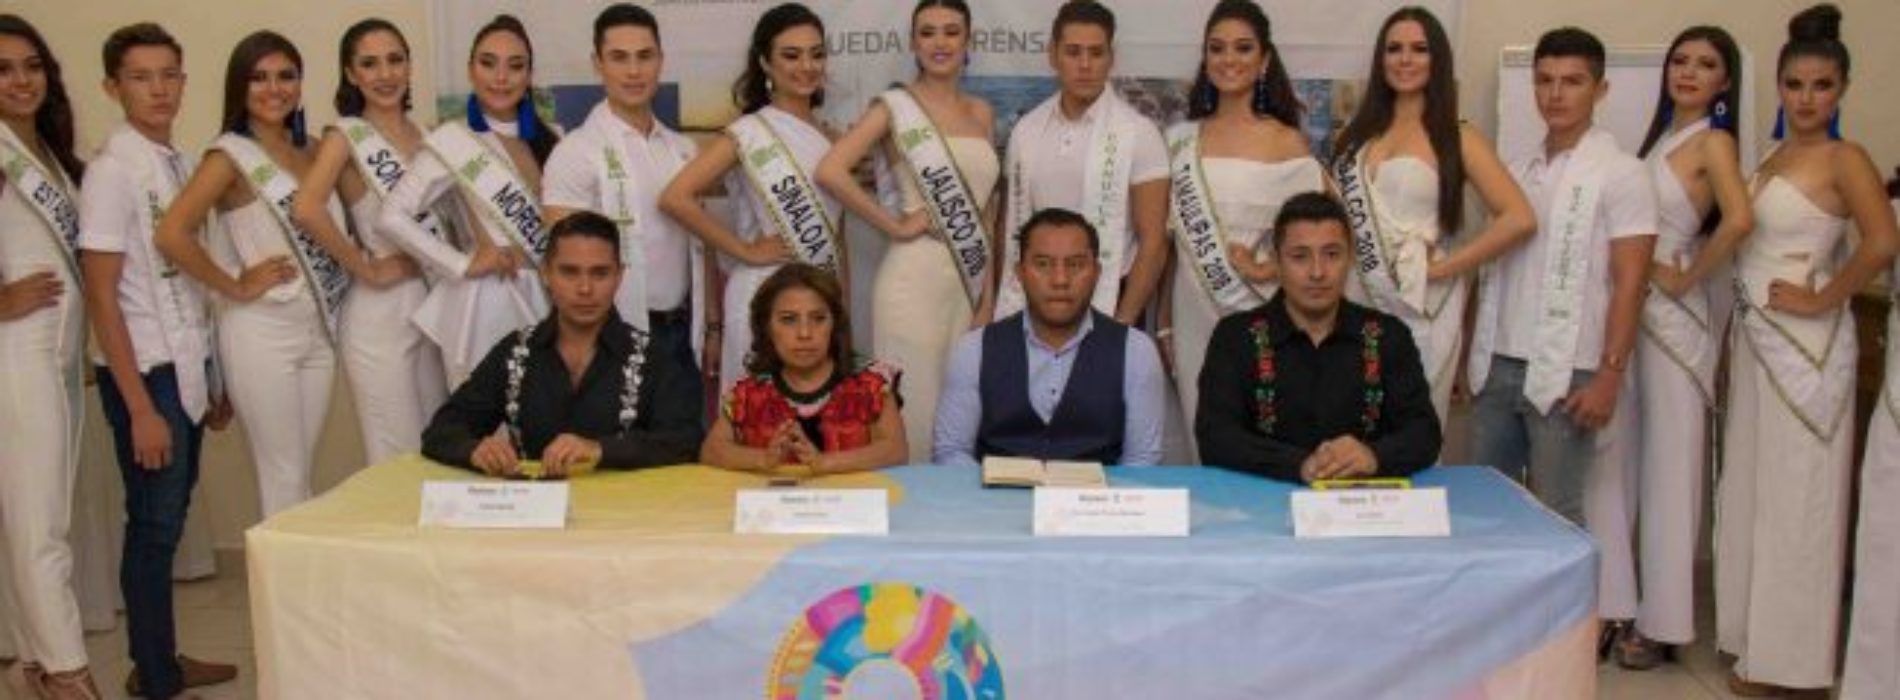 Oaxaca sede del Certamen Nacional Miss Teen Earth
México